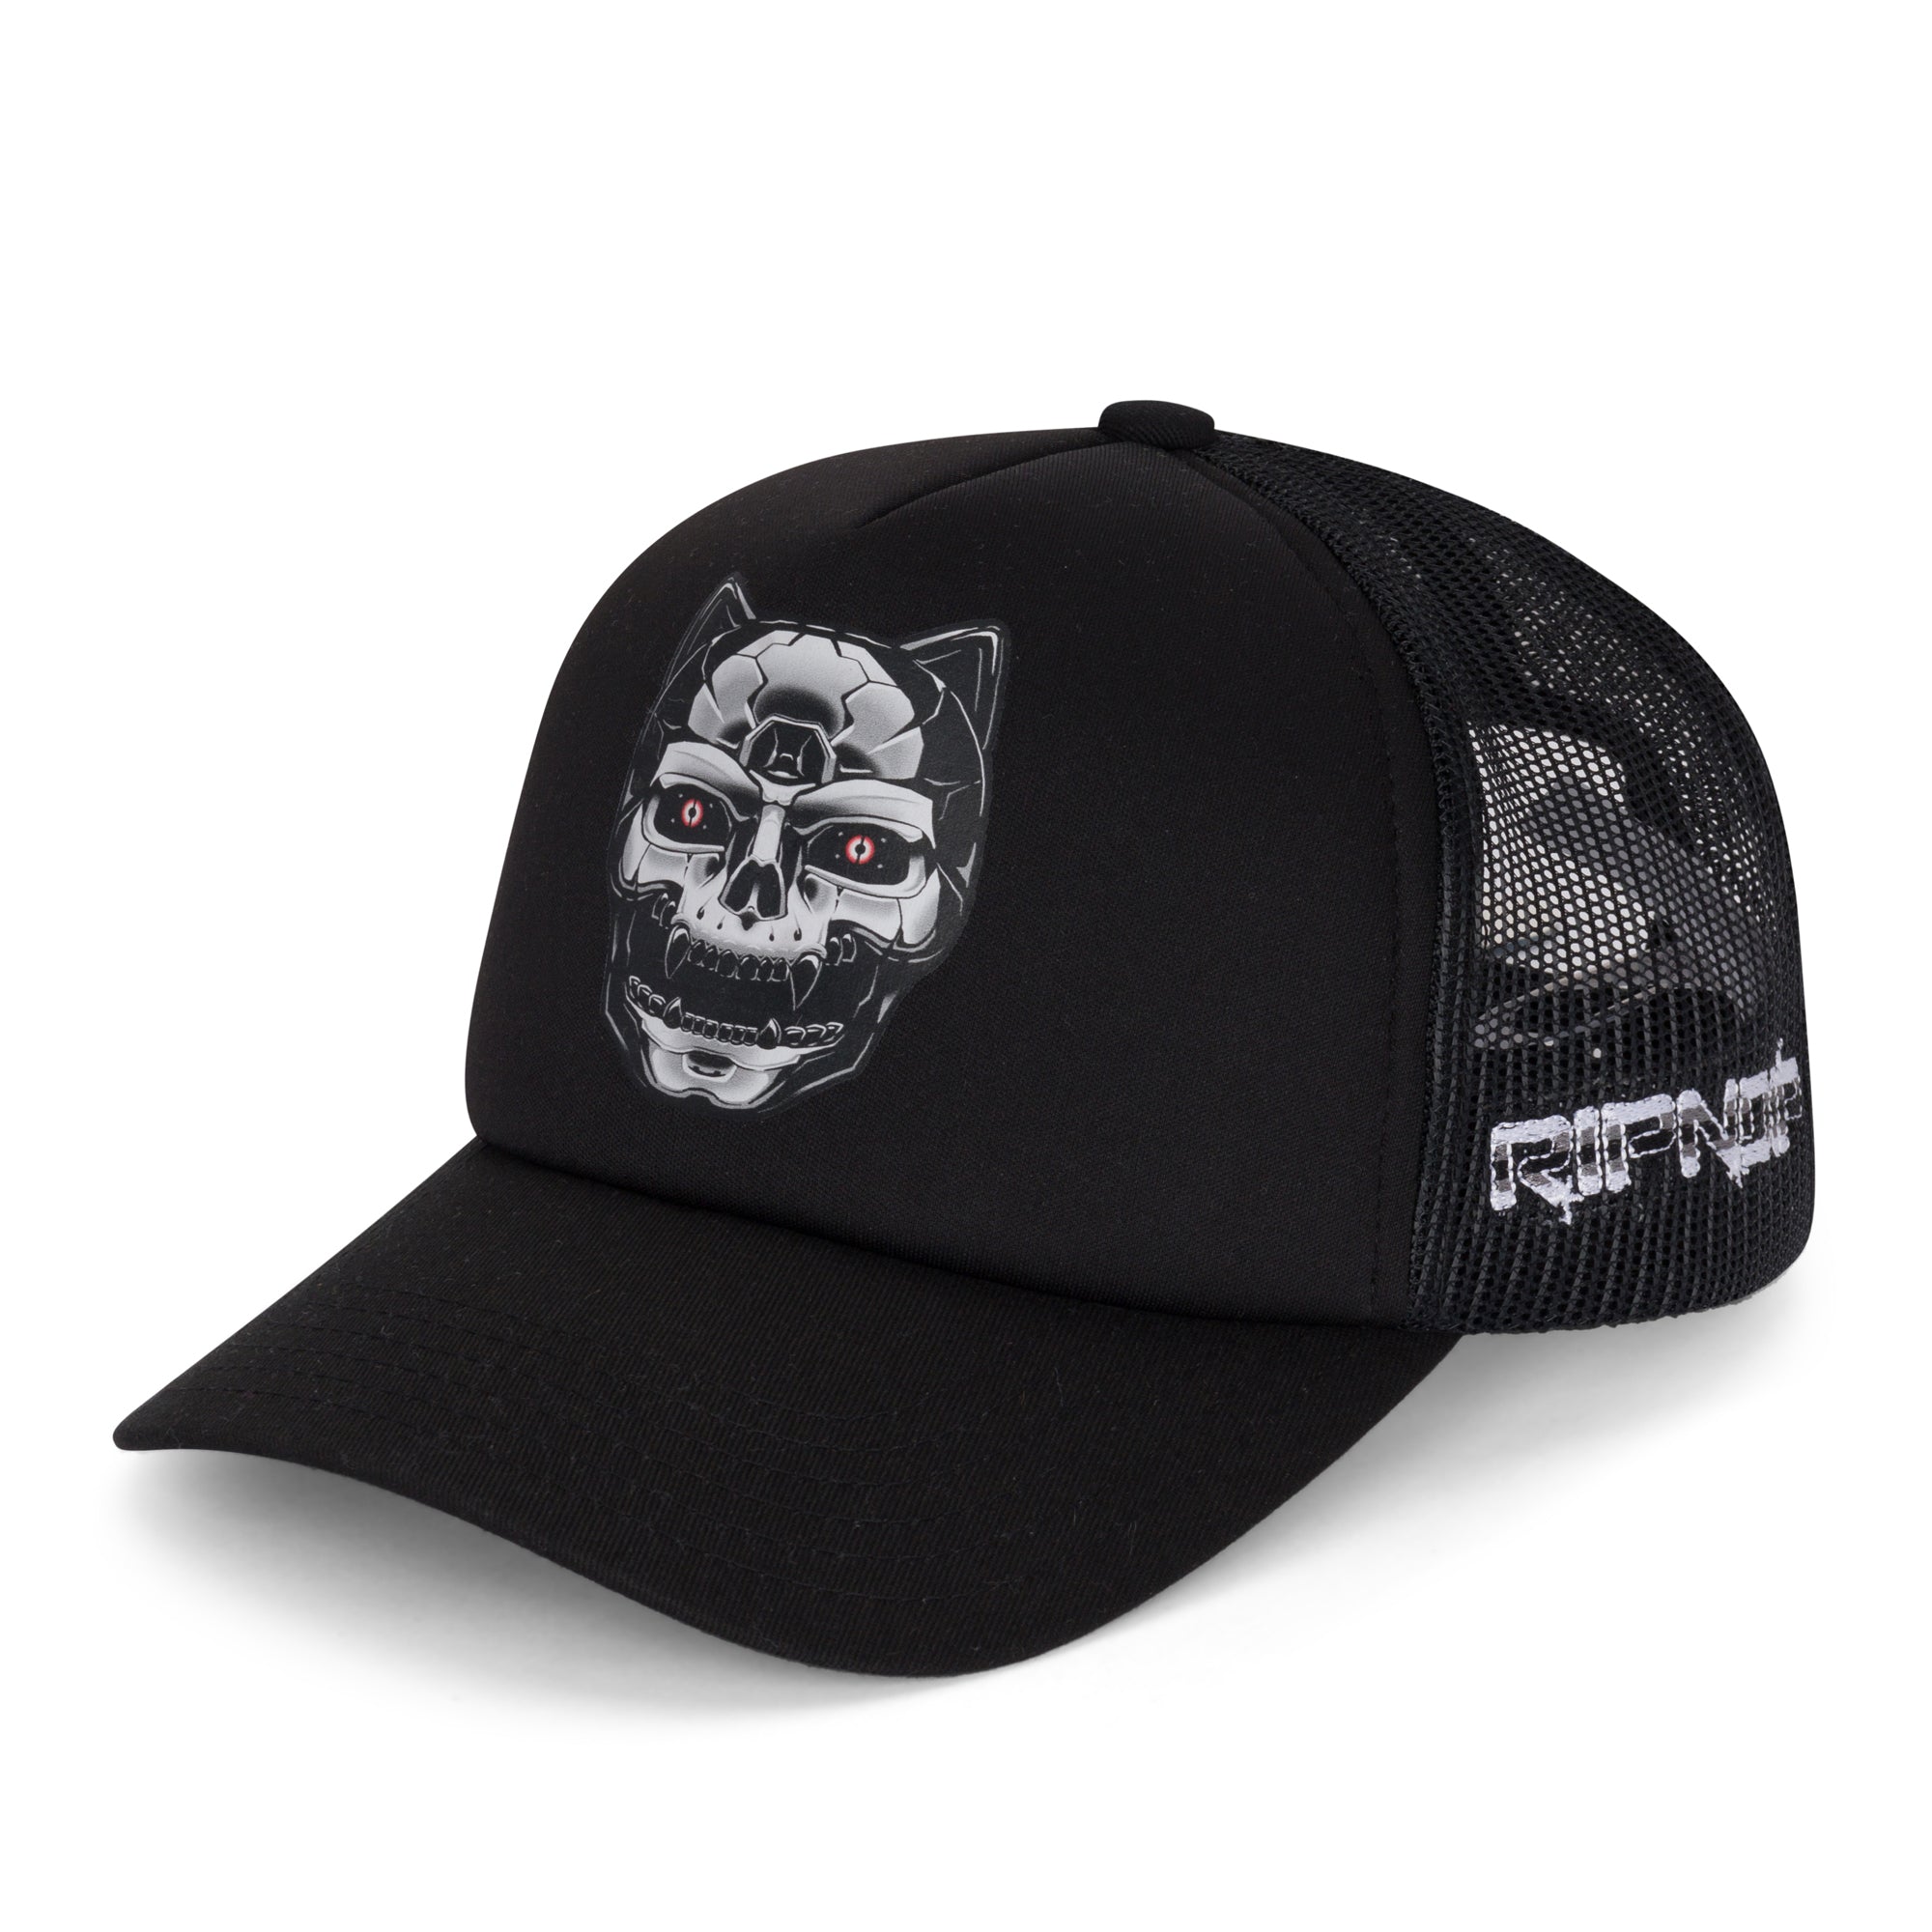 Nerminator 2.0 Trucker Hat (Black)